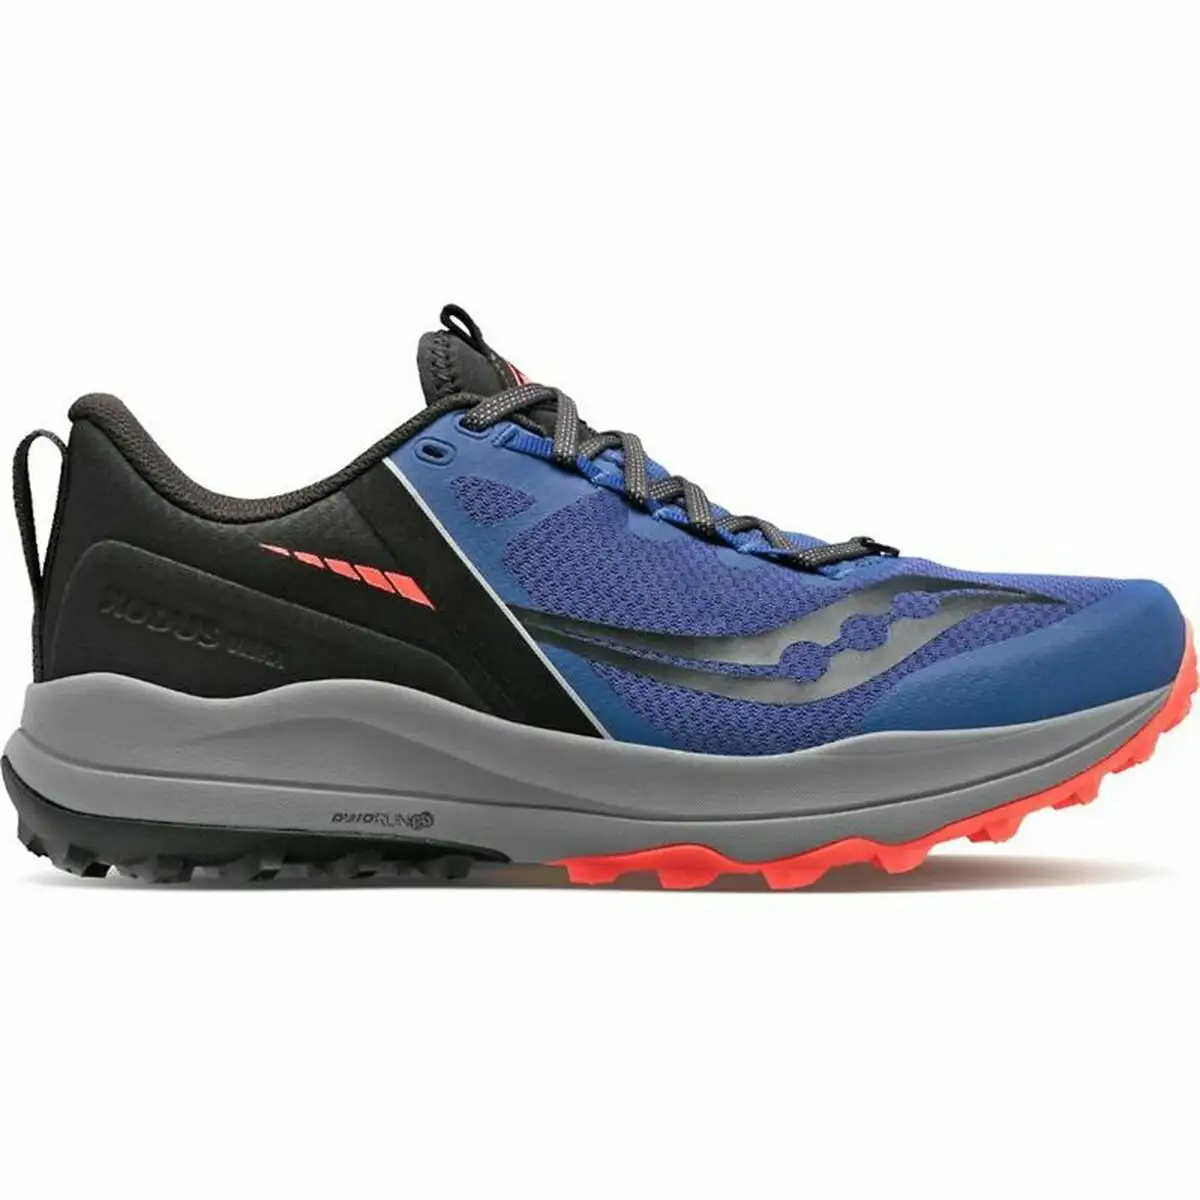 Chaussures de running pour adultes saucony xodus ultra 41487 bleu_9921. DIAYTAR SENEGAL - Où Choisir Devient une Expression de Soi. Découvrez notre boutique en ligne et trouvez des articles qui révèlent votre personnalité et votre style.